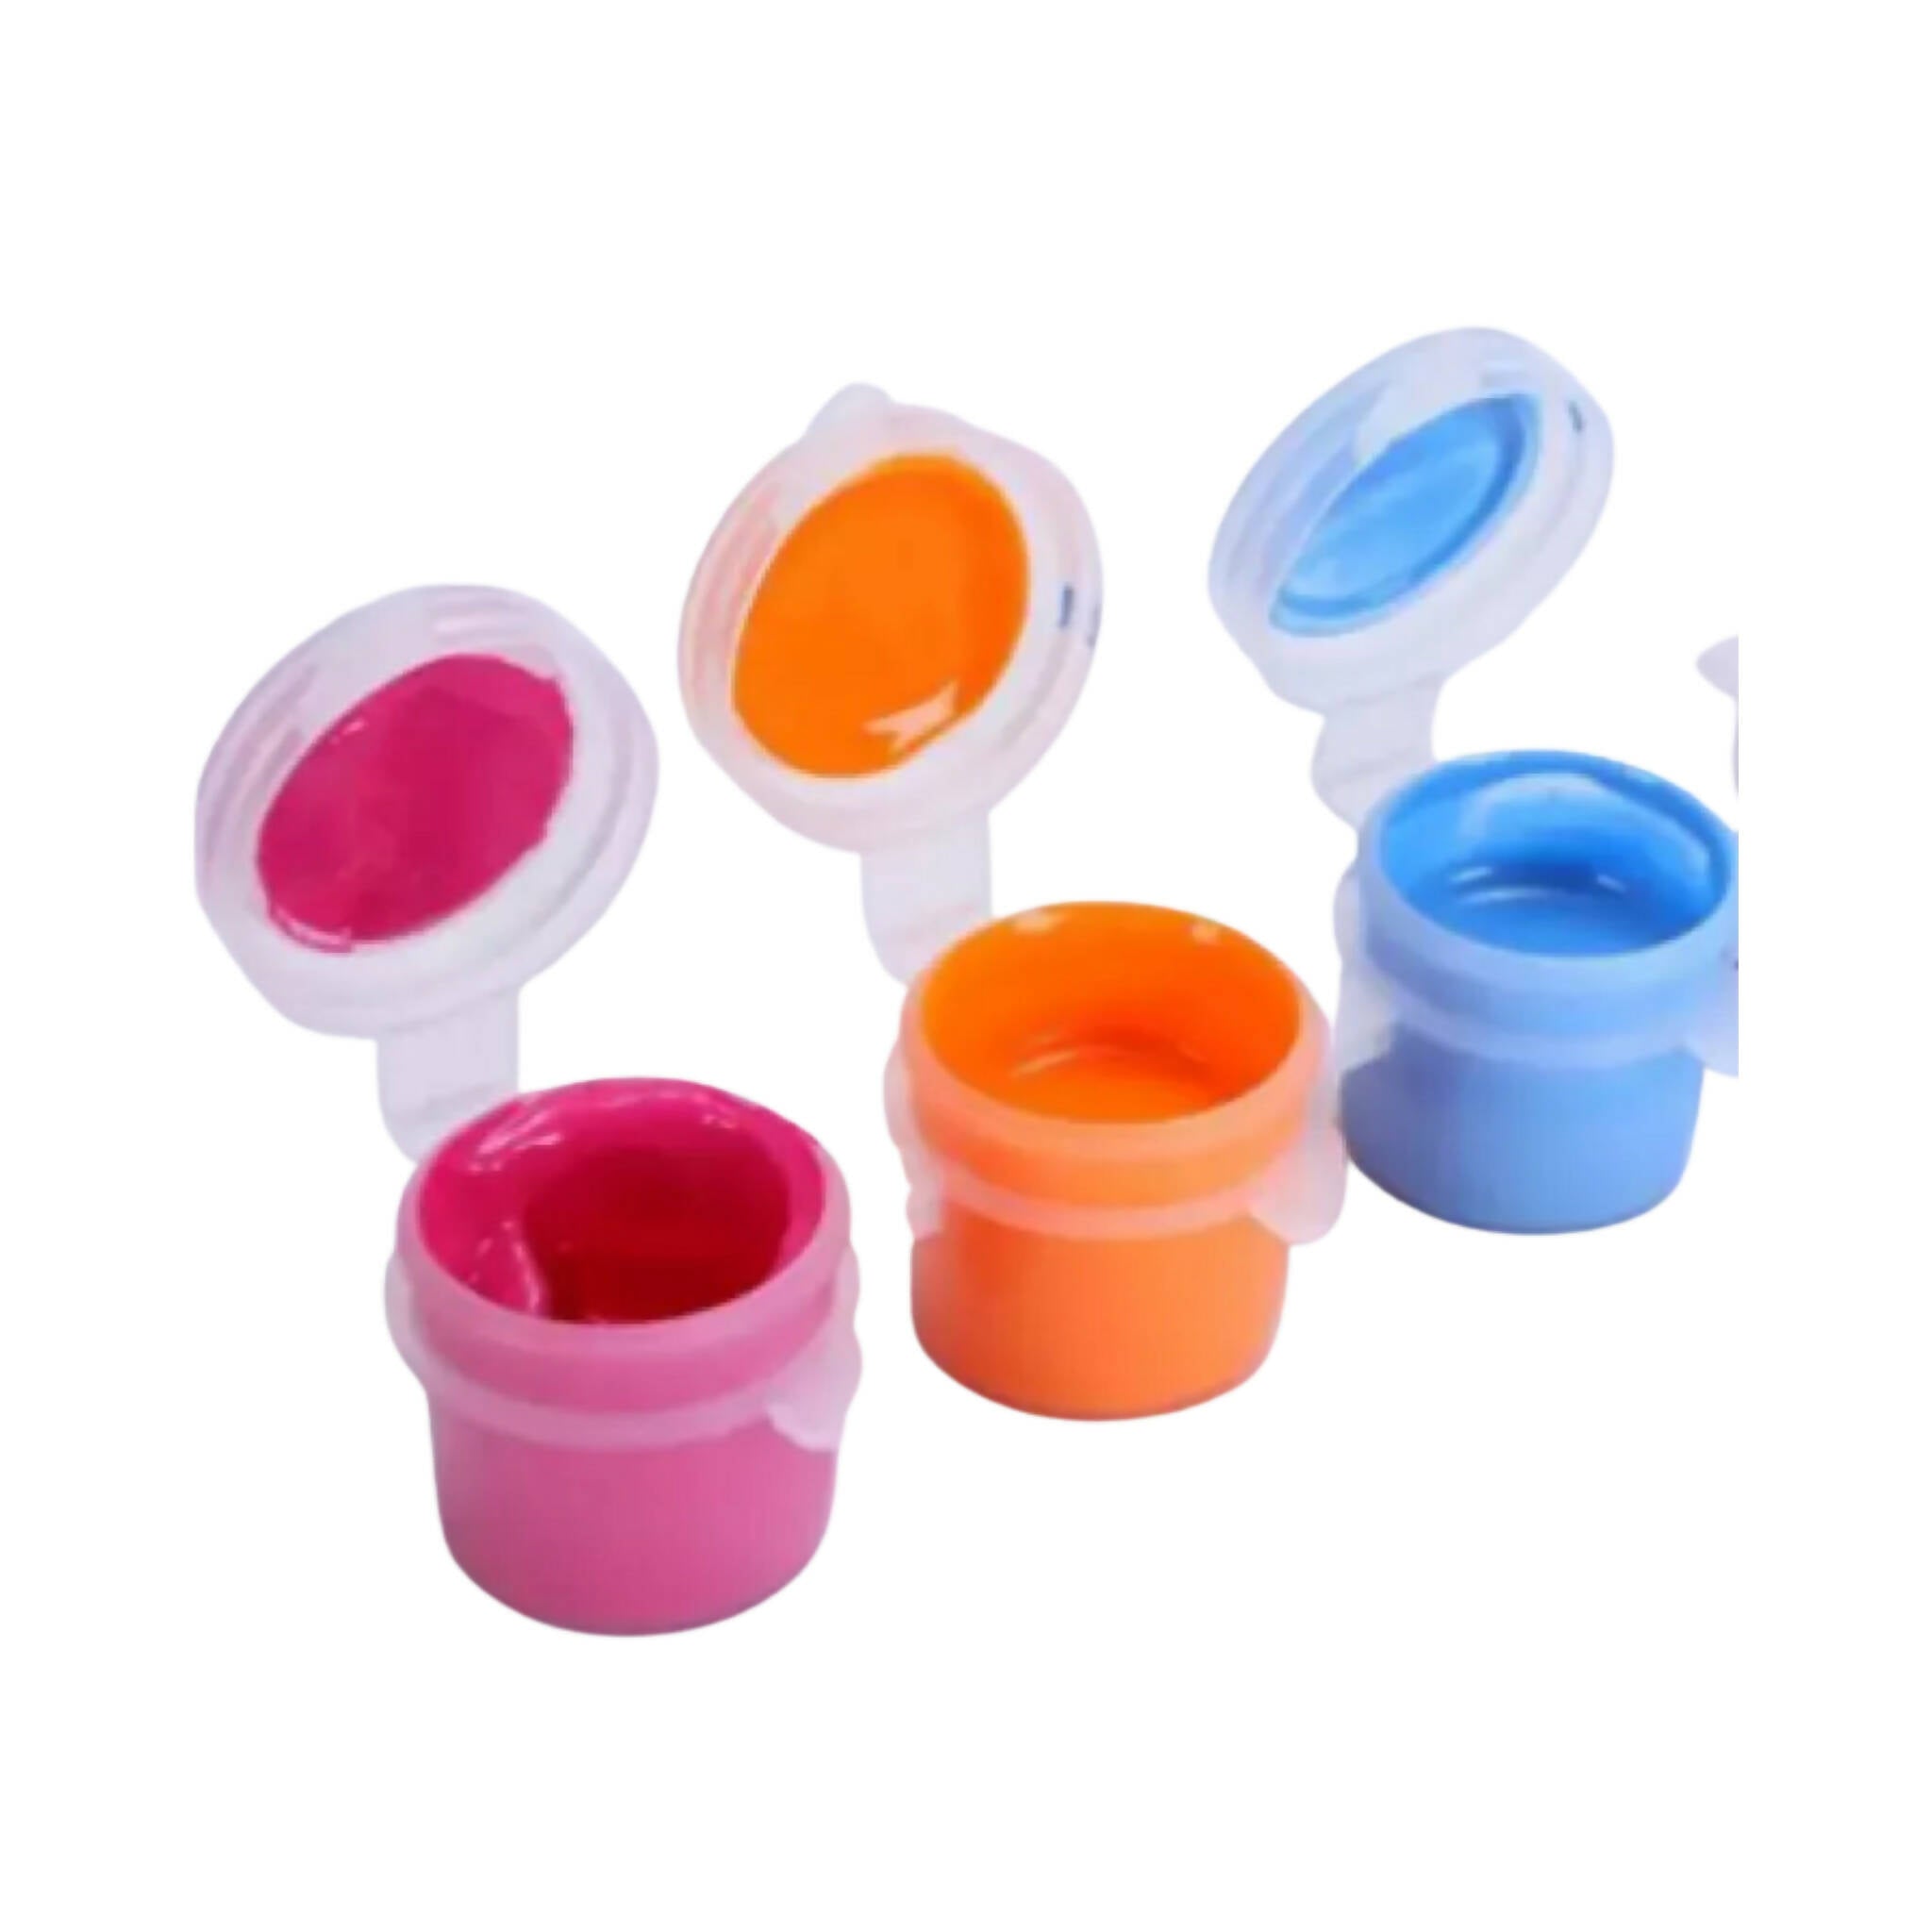 Mini Paint Kit, Vibrant Colors, Endless Fun, for Young Kids'